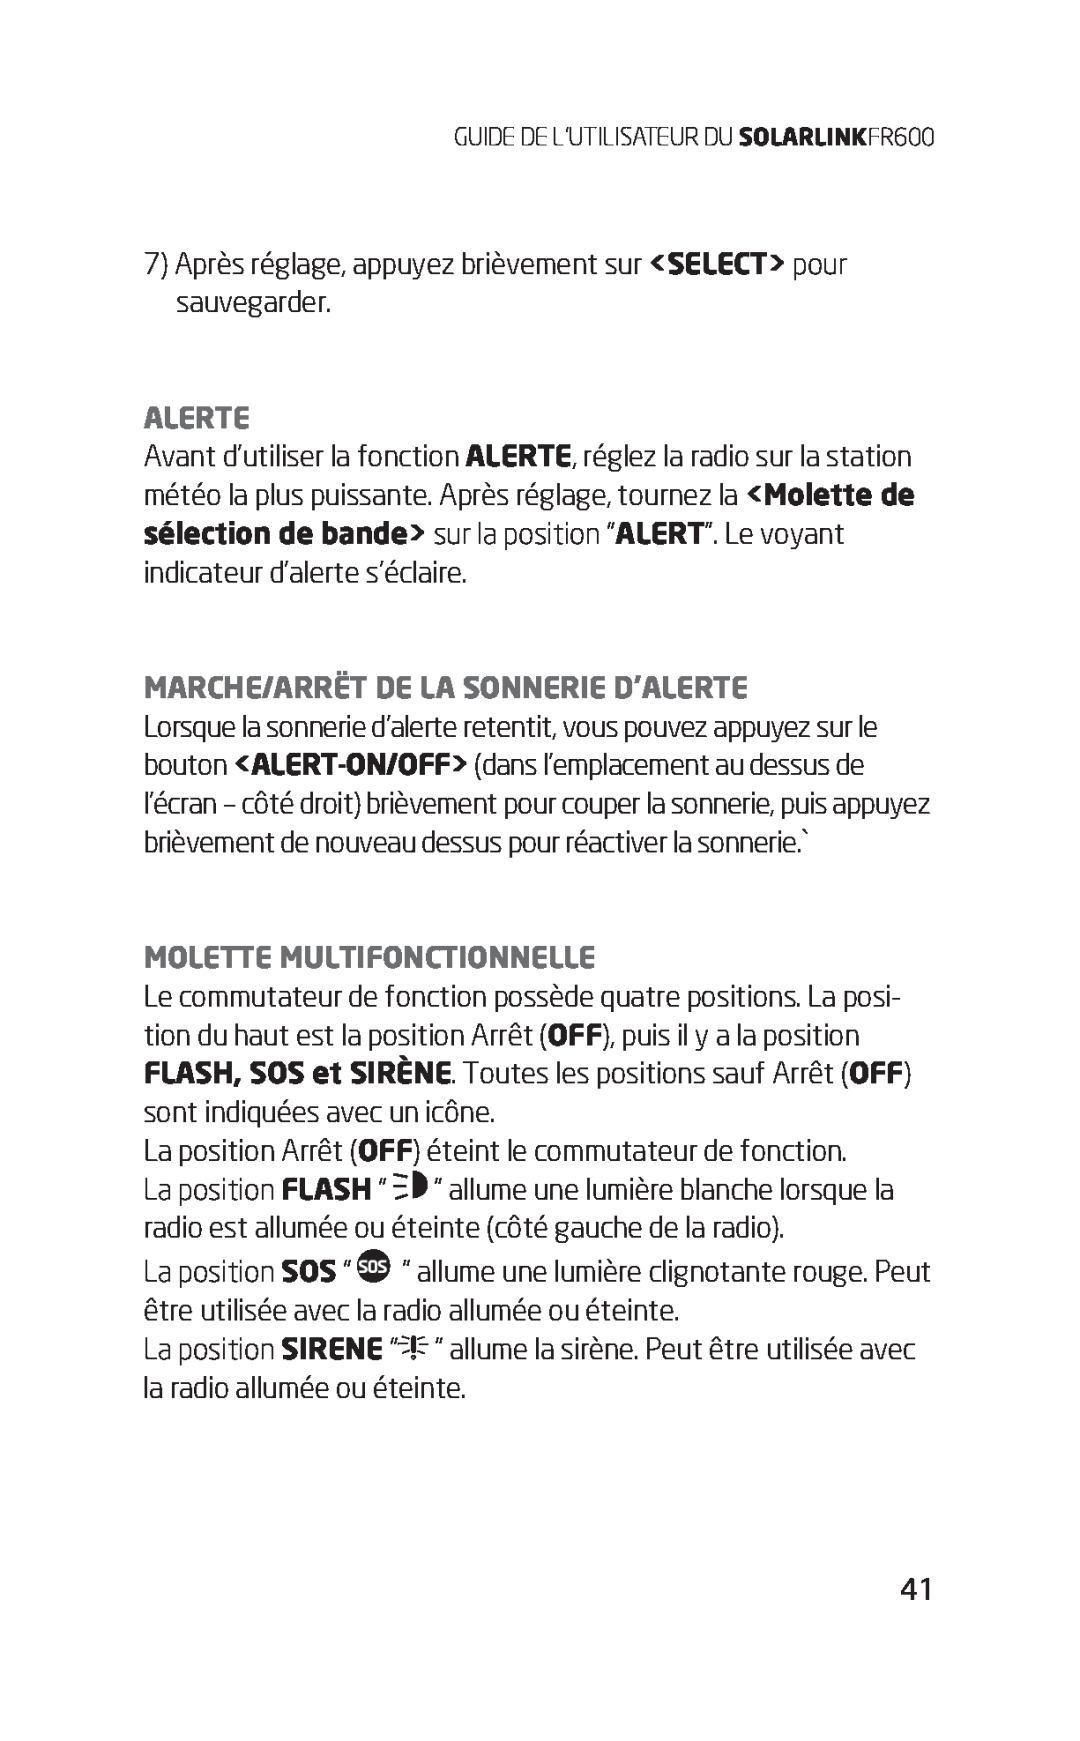 Eton FR600 owner manual Marche/Arrët De La Sonnerie D’Alerte, Molette Multifonctionnelle 